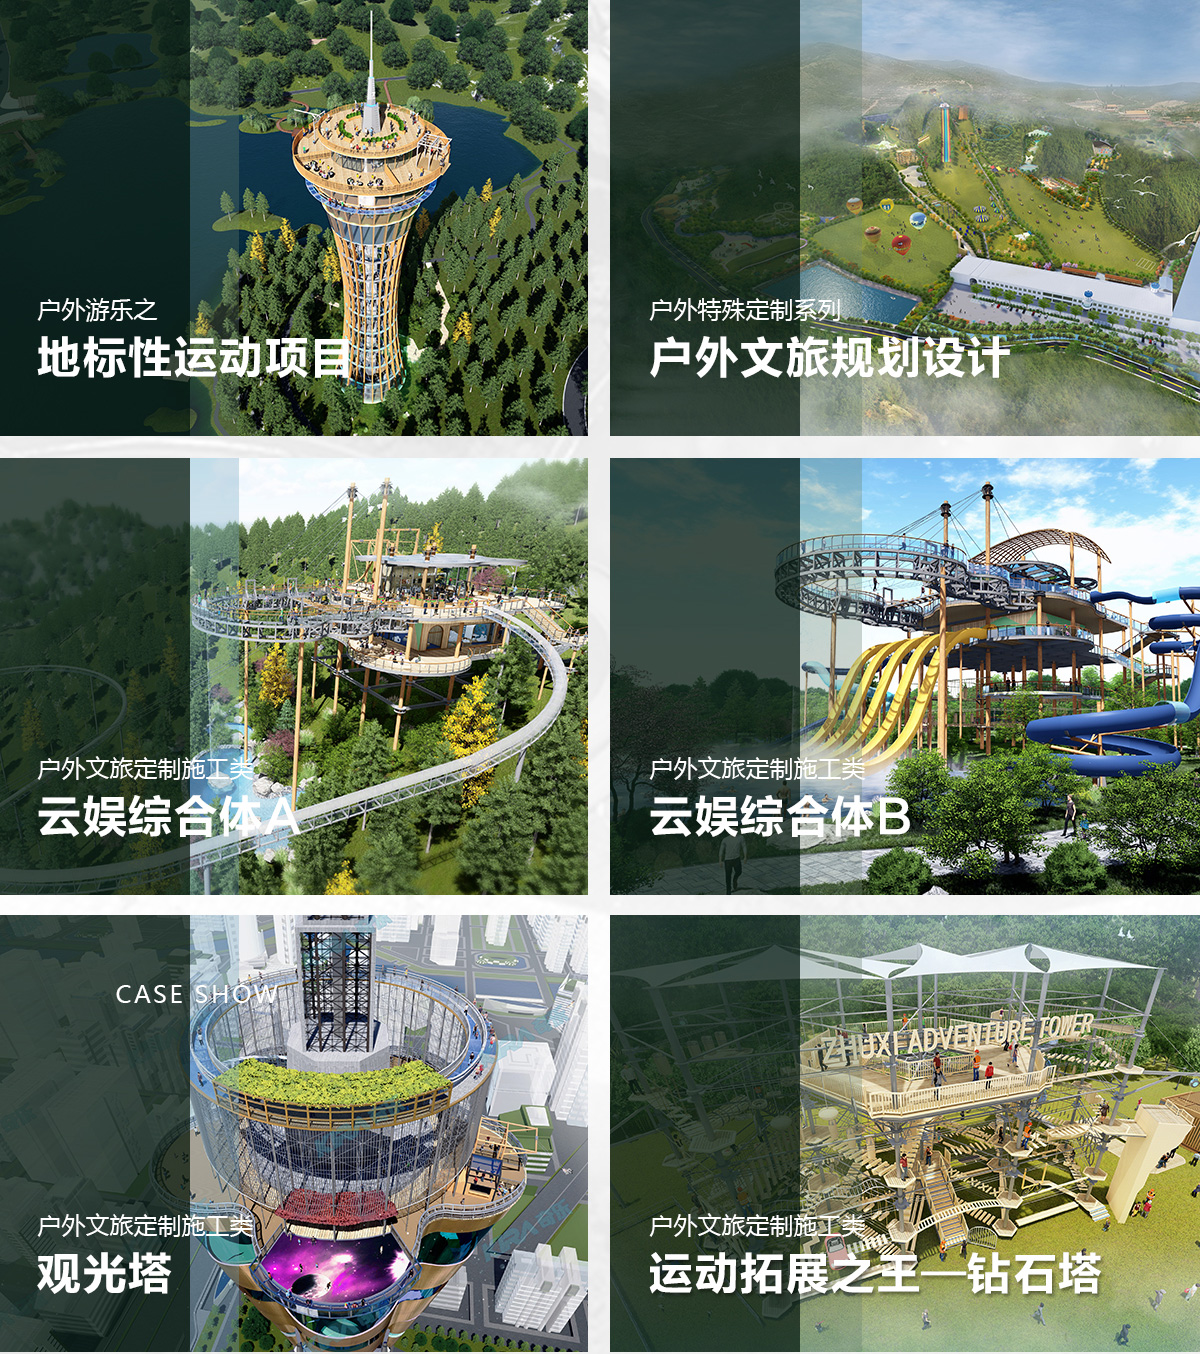 奇乐集团的钻石塔在广东、浙江、四川、广西等各个地方已有项目成功案例落地。